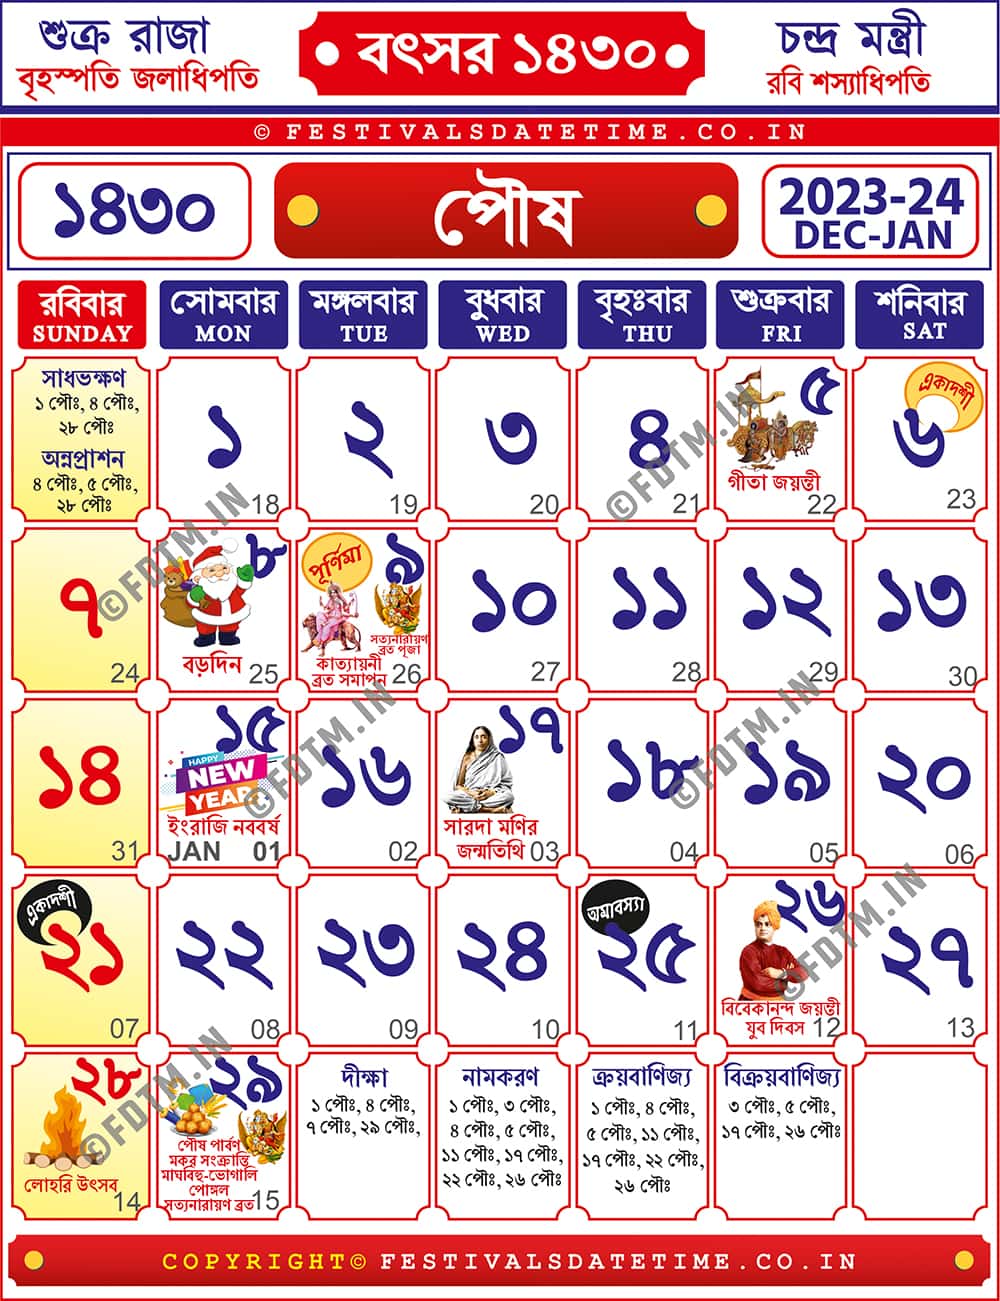 1430 Poush Bengali Calendar Free, Bengali Calendar 2023-24 | পৌষ বাংলা ক্যালেন্ডার 1430